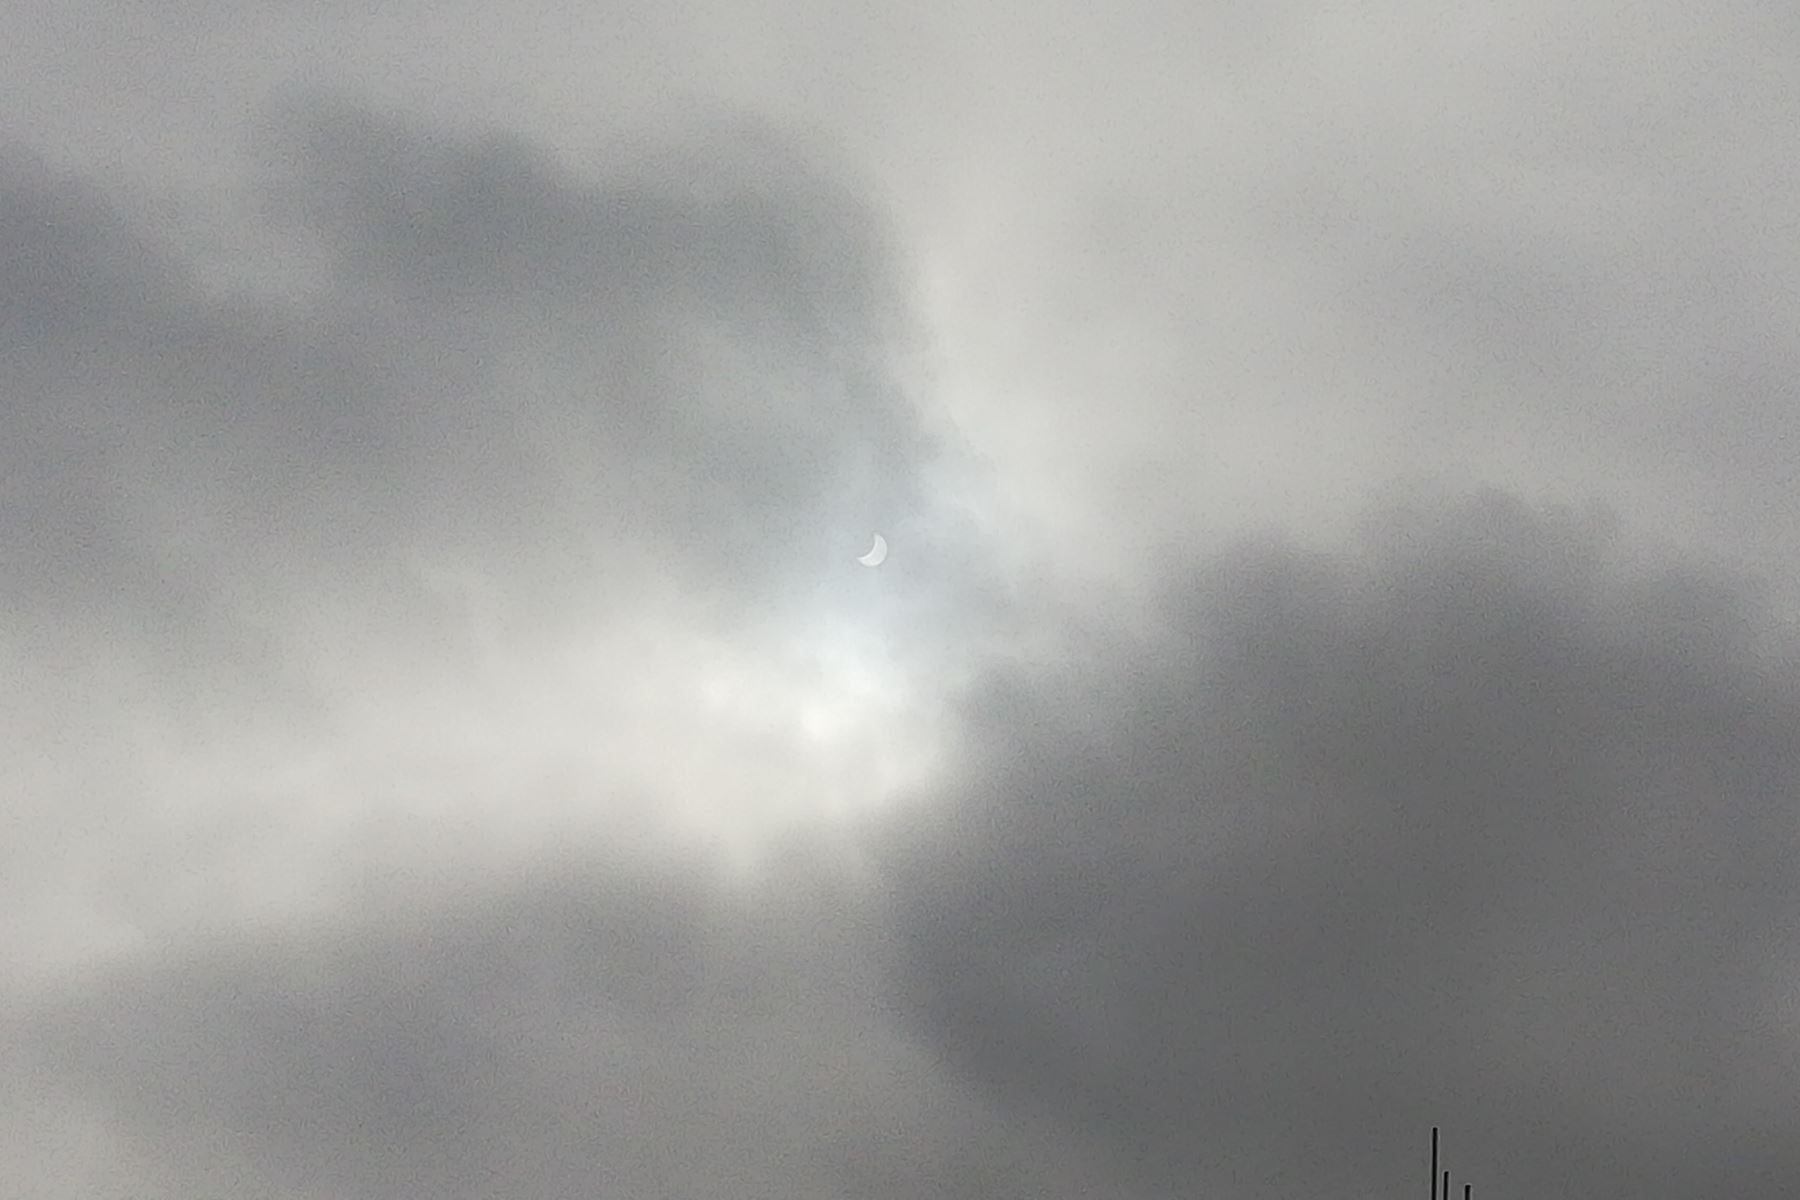 El cielo nublado con el que amaneció Chimbote (Áncash) dificultó observar el eclipse parcial solar. Foto: Gonzalo Horna